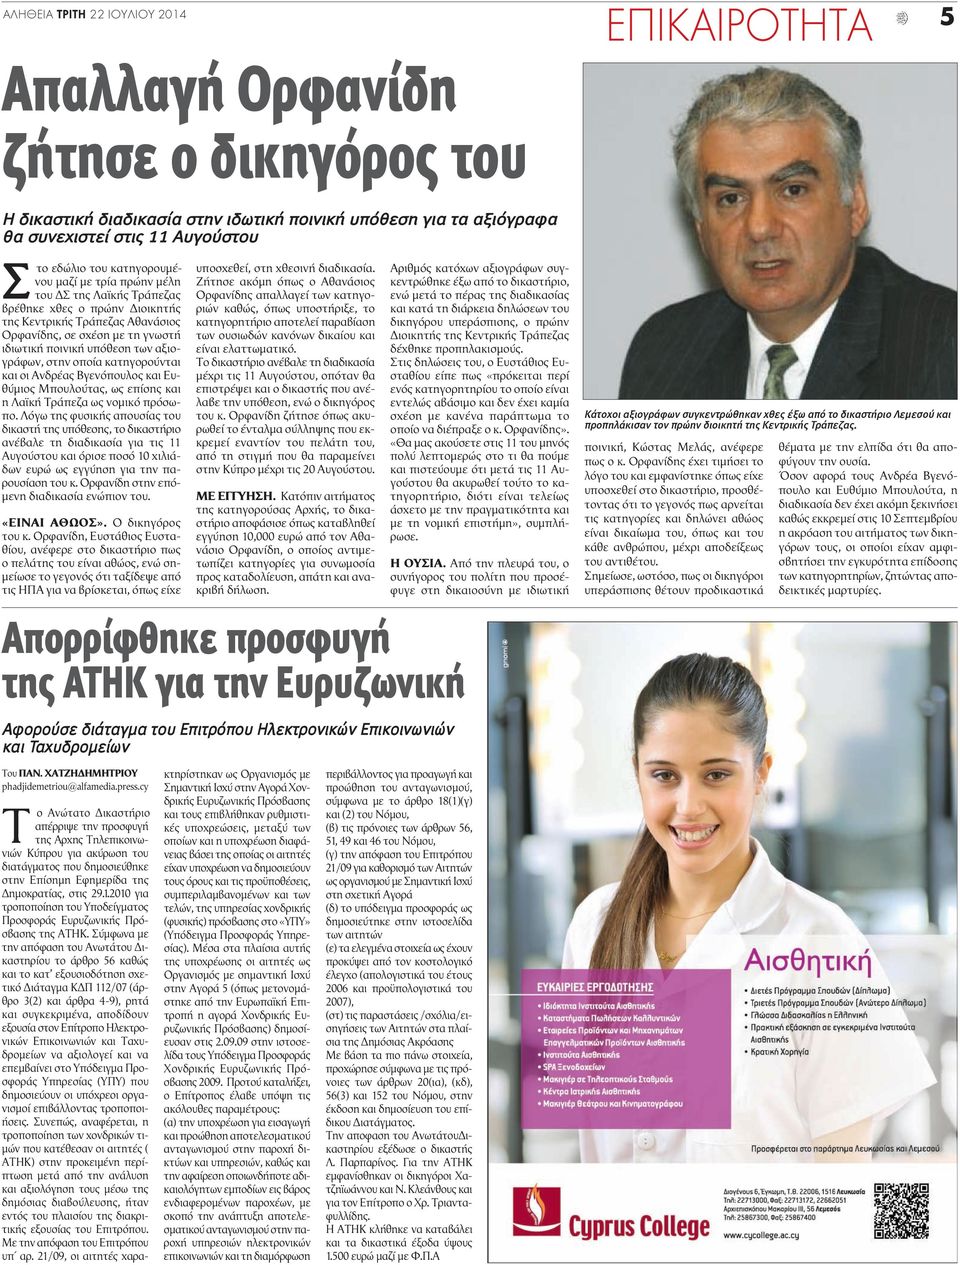 αξιογράφων, στην οποία κατηγορούνται και οι Ανδρέας Βγενόπουλος και Ευθύμιος Μπουλούτας, ως επίσης και η Λαϊκή Τράπεζα ως νομικό πρόσωπο.